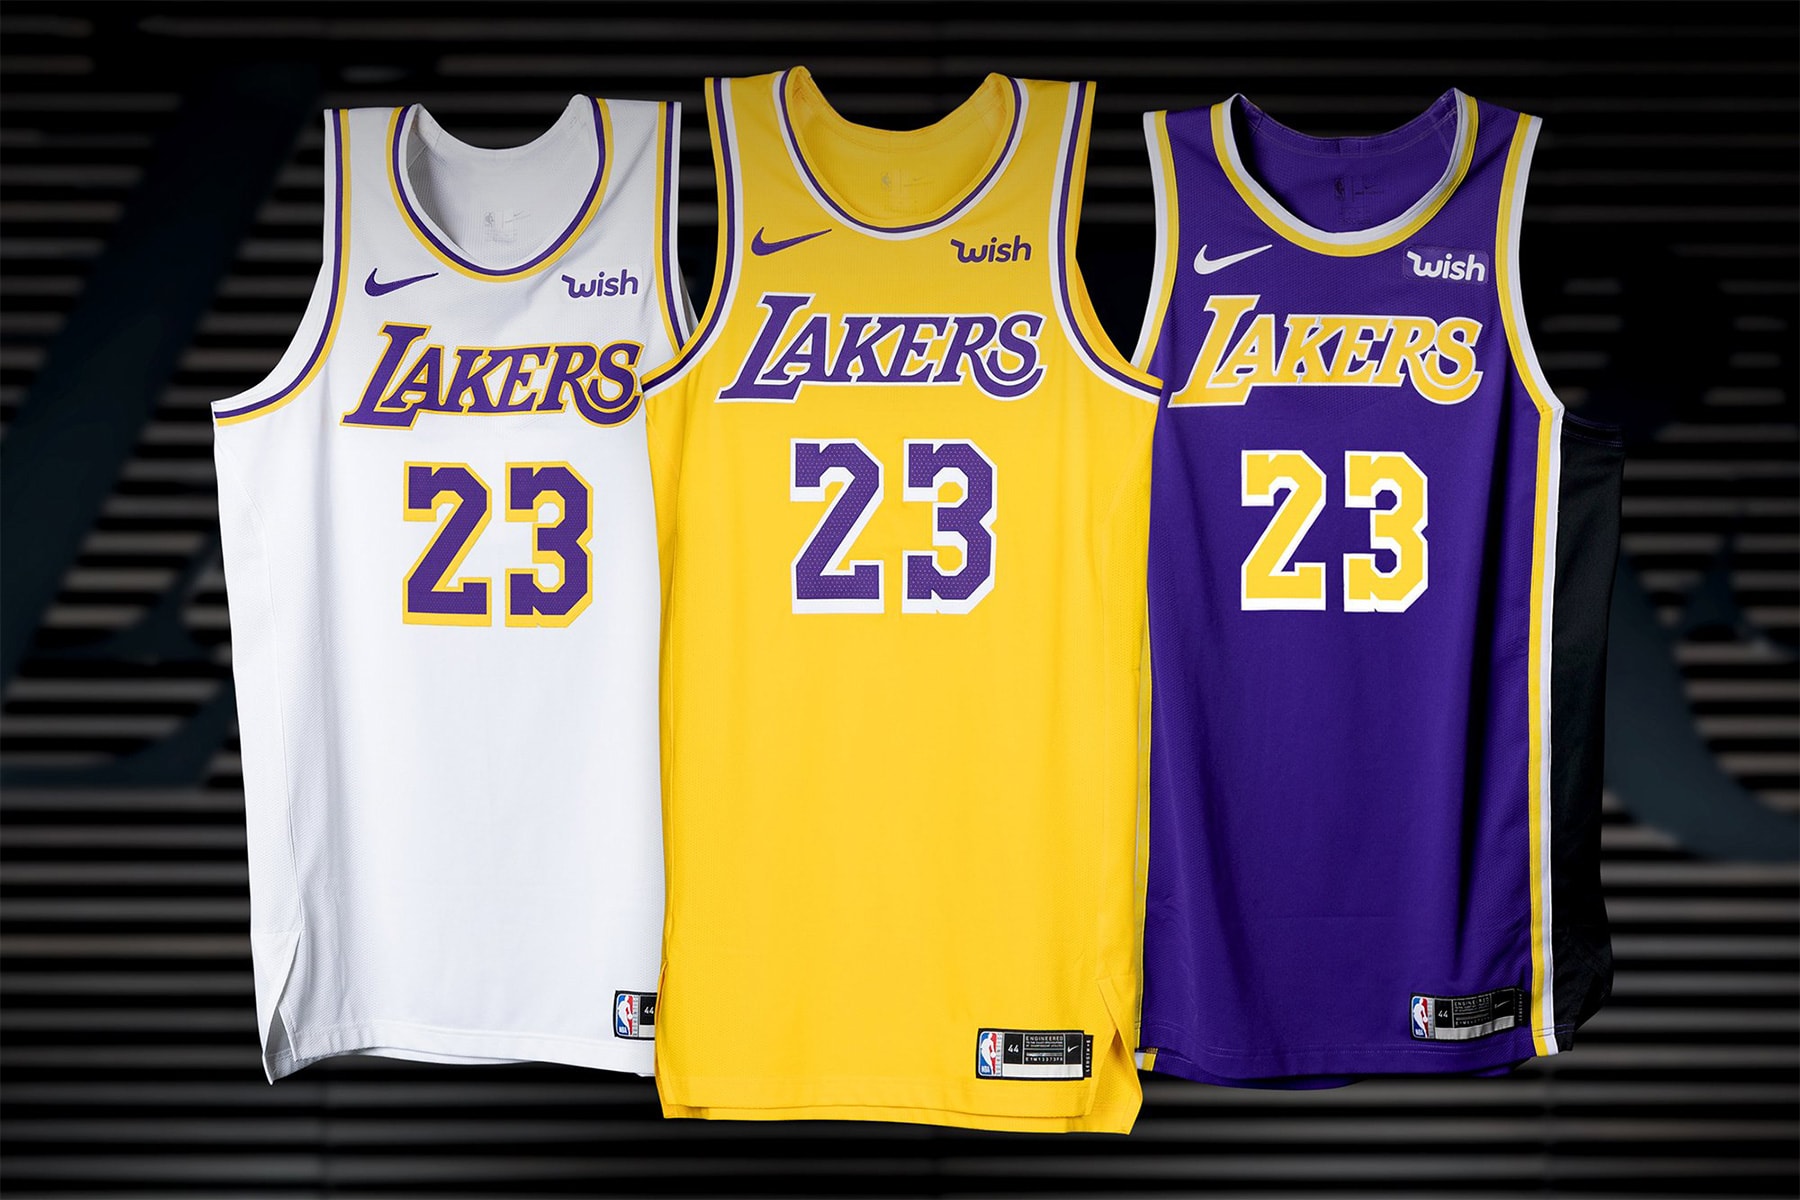 Los Angeles Lakers 正式公佈 2018-19 賽季全新 Nike 球衣系列